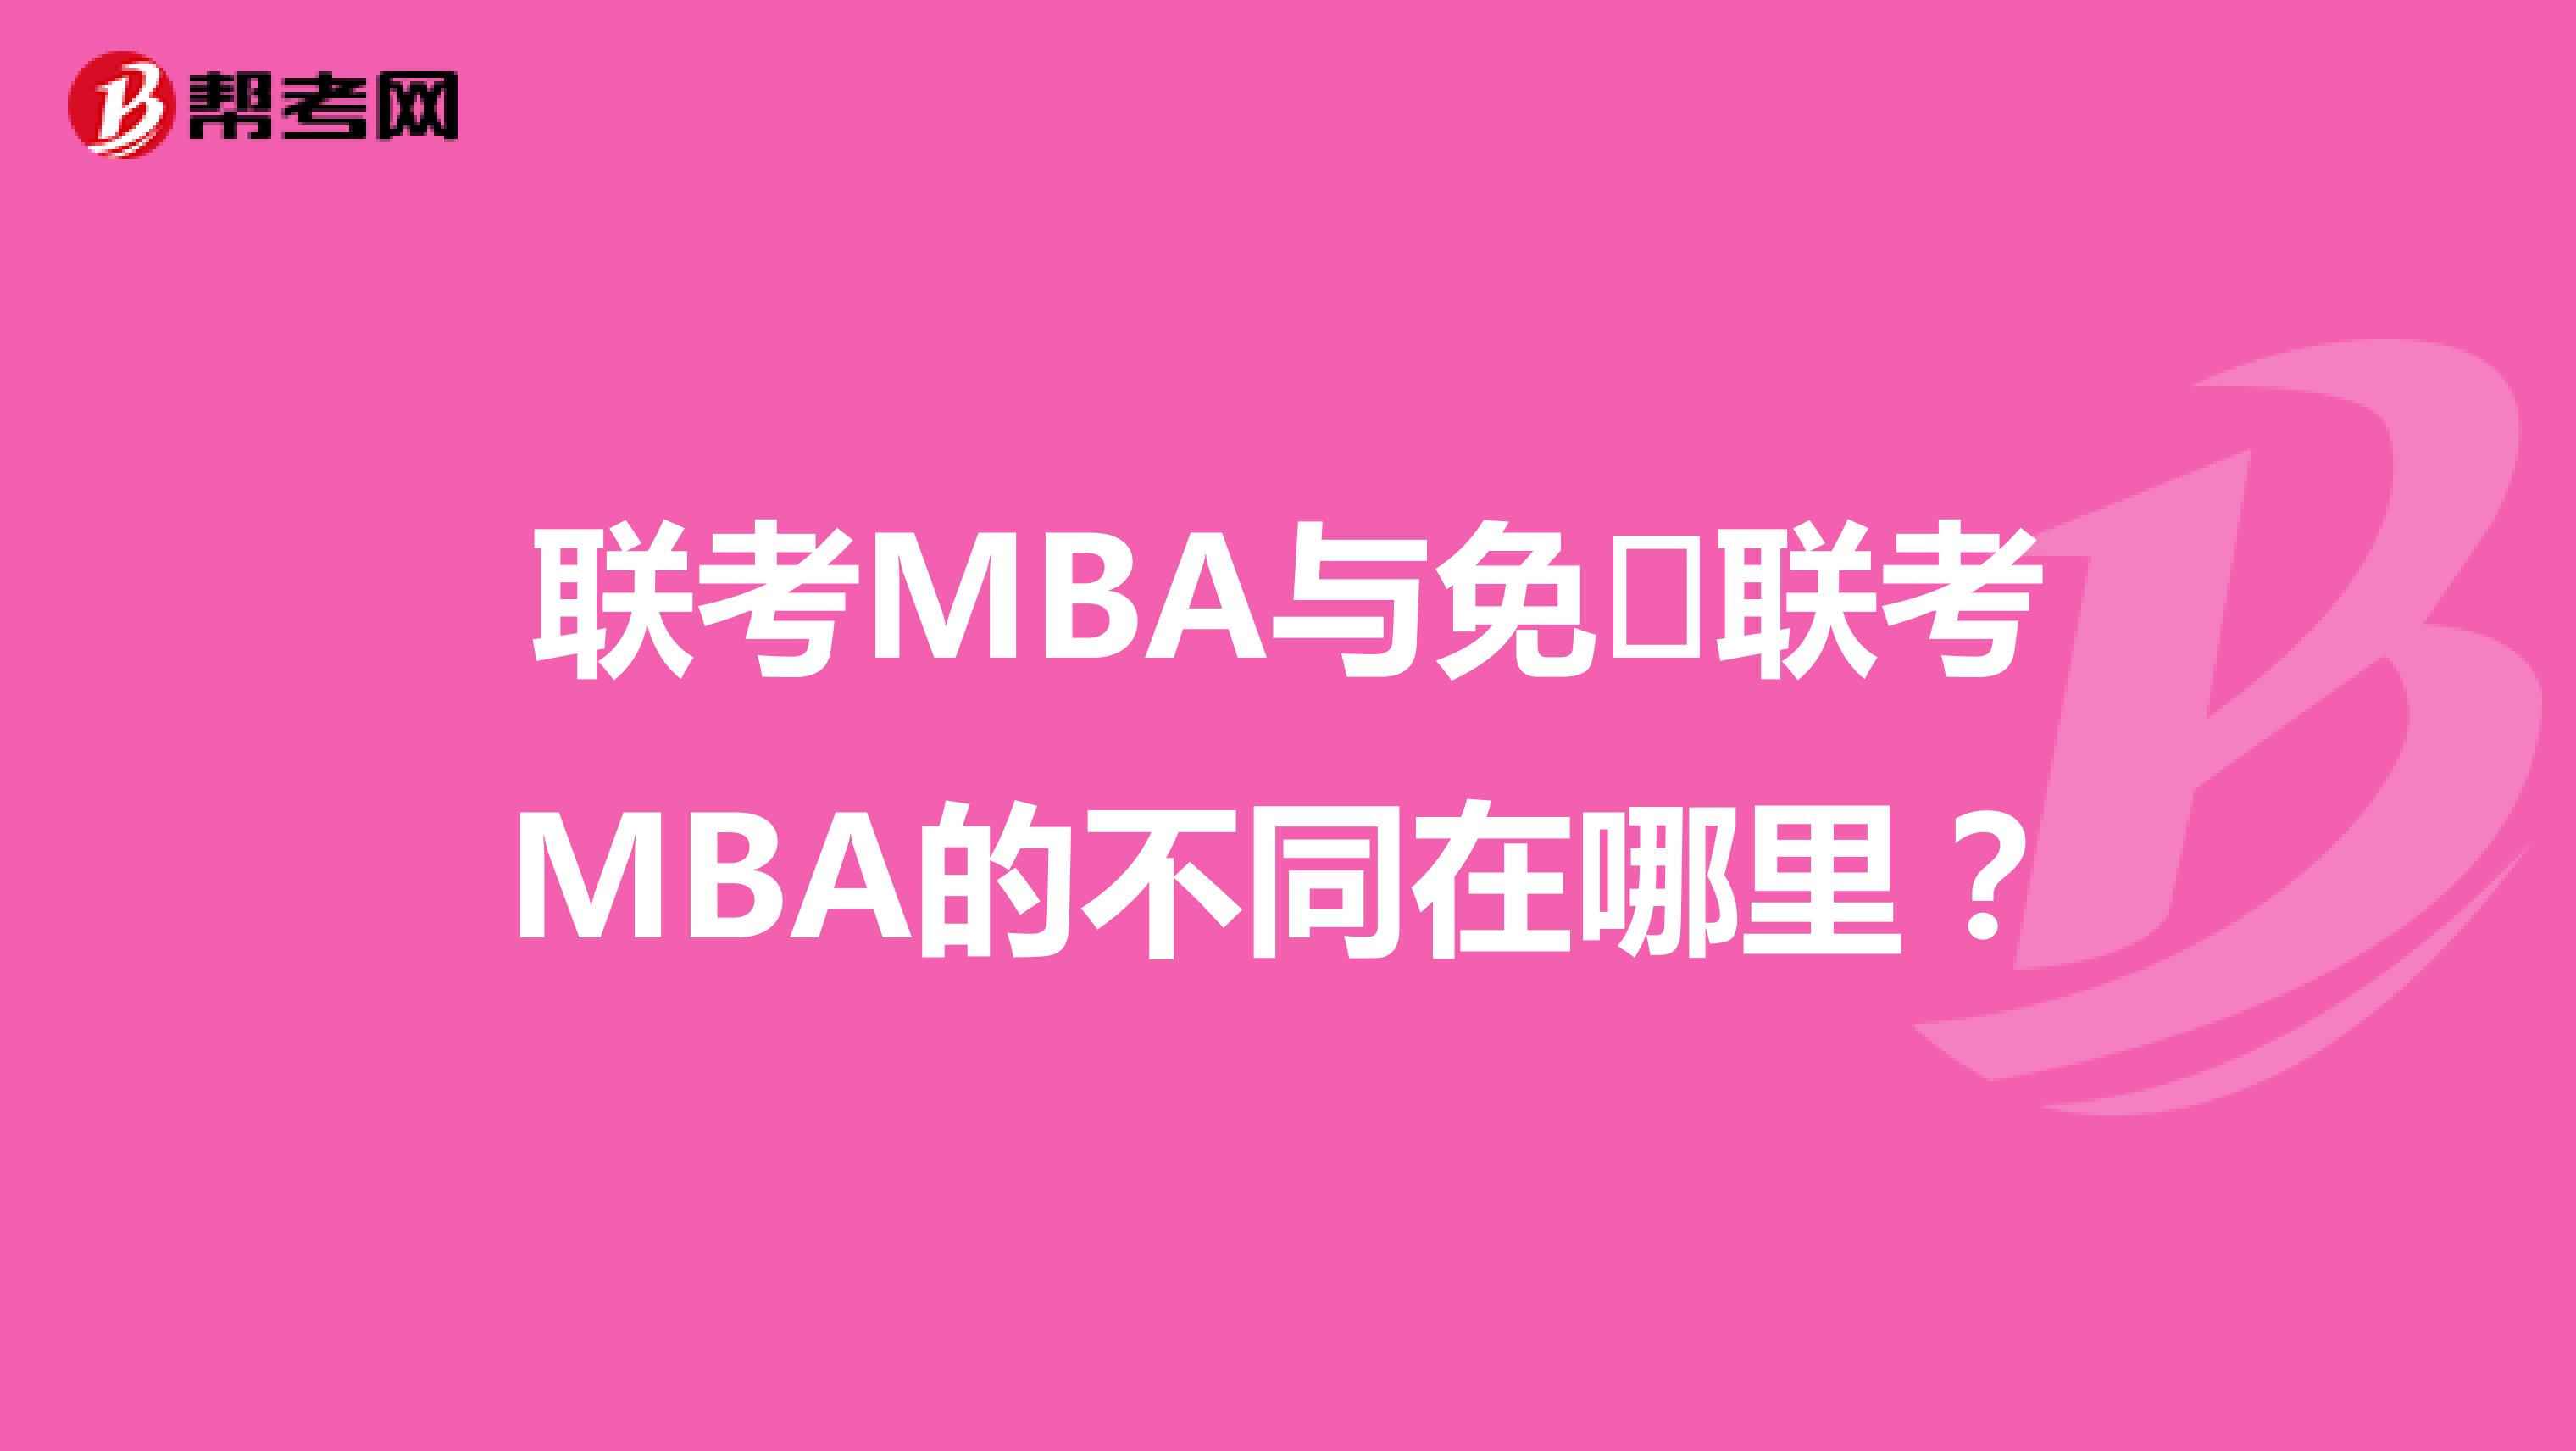 联考MBA与免​联考MBA的不同在哪里？